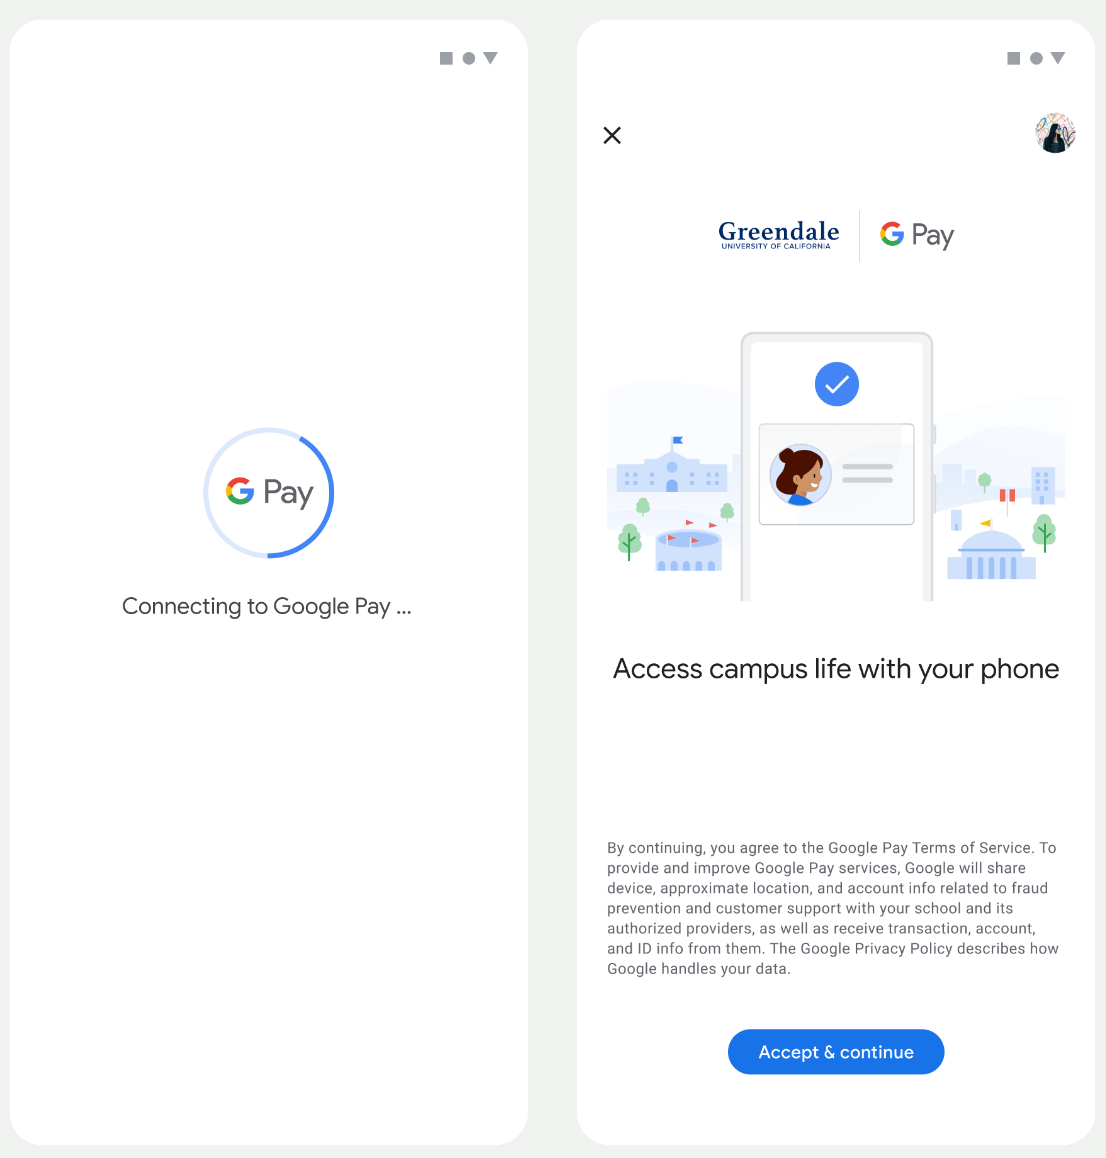 במסך הראשון, האפליקציה מתחברת אל Google Wallet. לחשבון
       במסך השני, המשתמש מאשר את התנאים וההגבלות וממשיך.